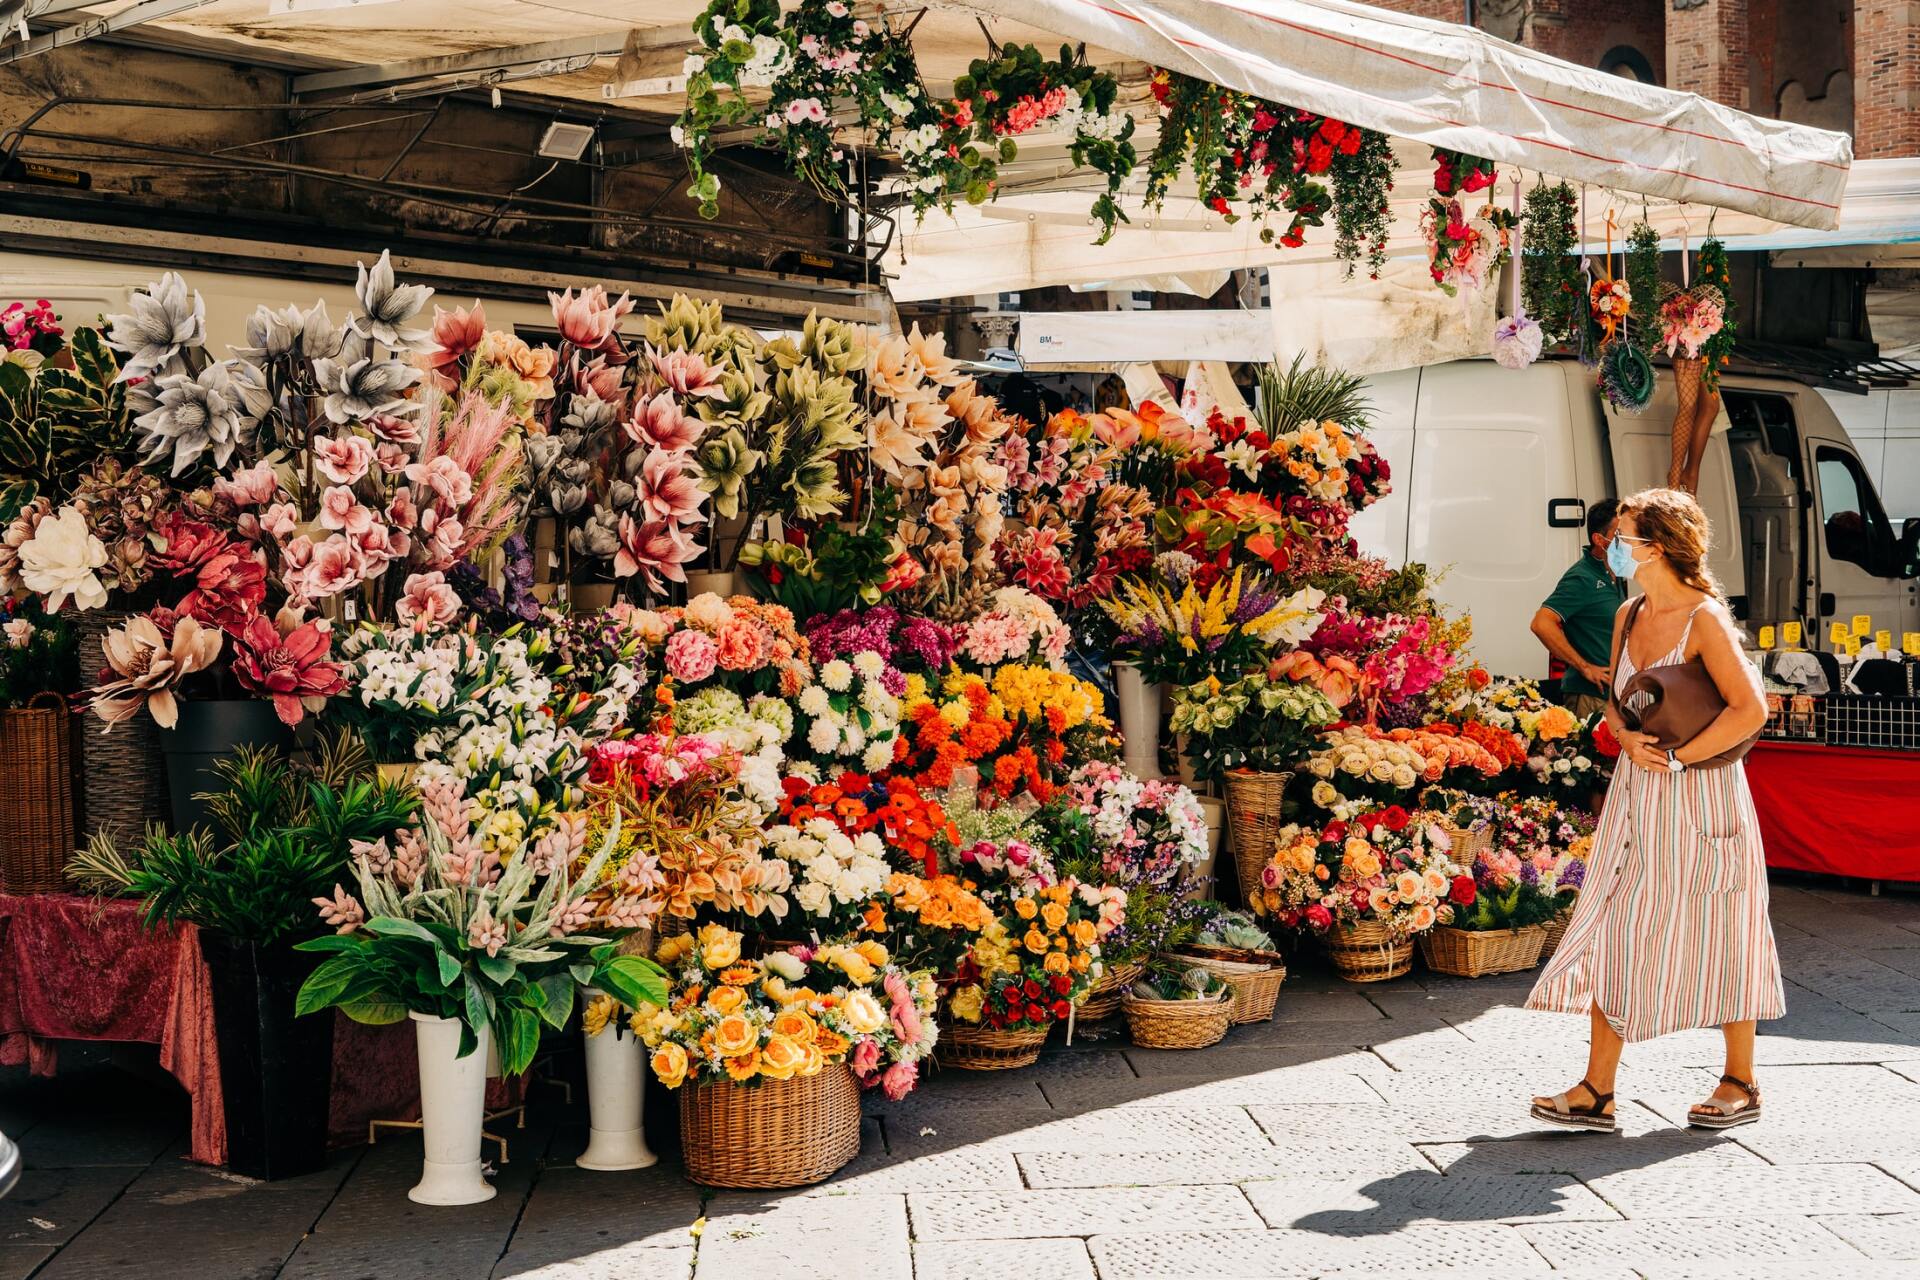 Your Flower shop: Multiflora Florist